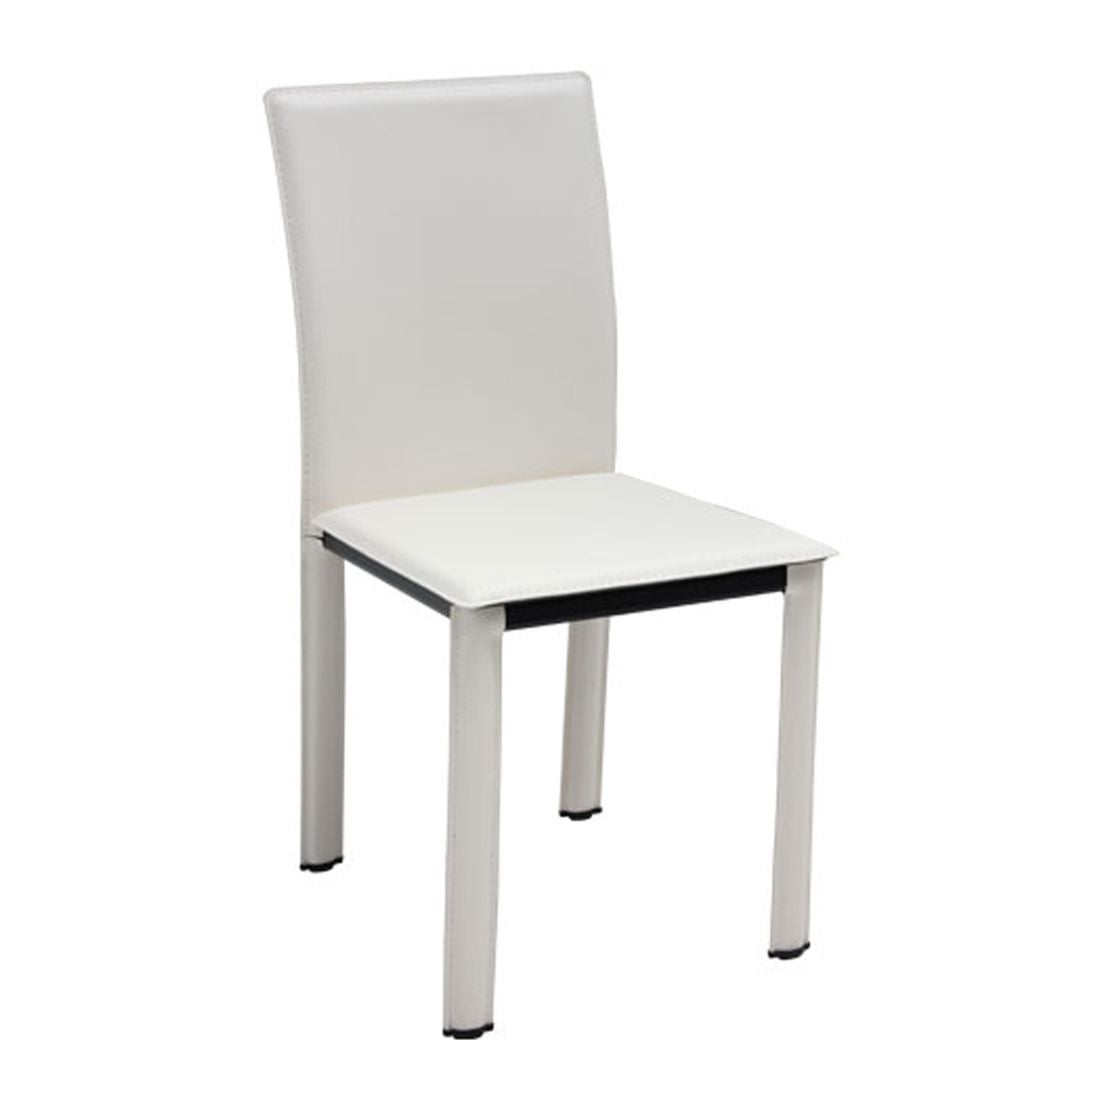 เก้าอี้ทานอาหาร เก้าอี้เหล็กเบาะหนัง รุ่น Asina สีสีขาว-SB Design Square